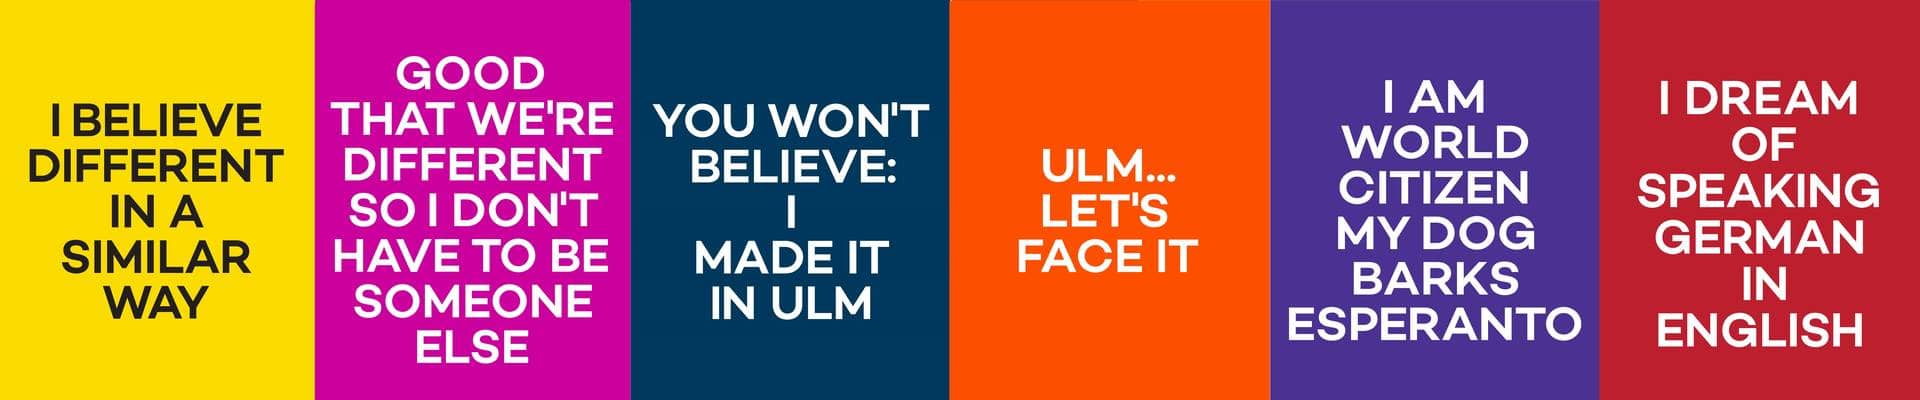 Poster der Ulm-Kampange